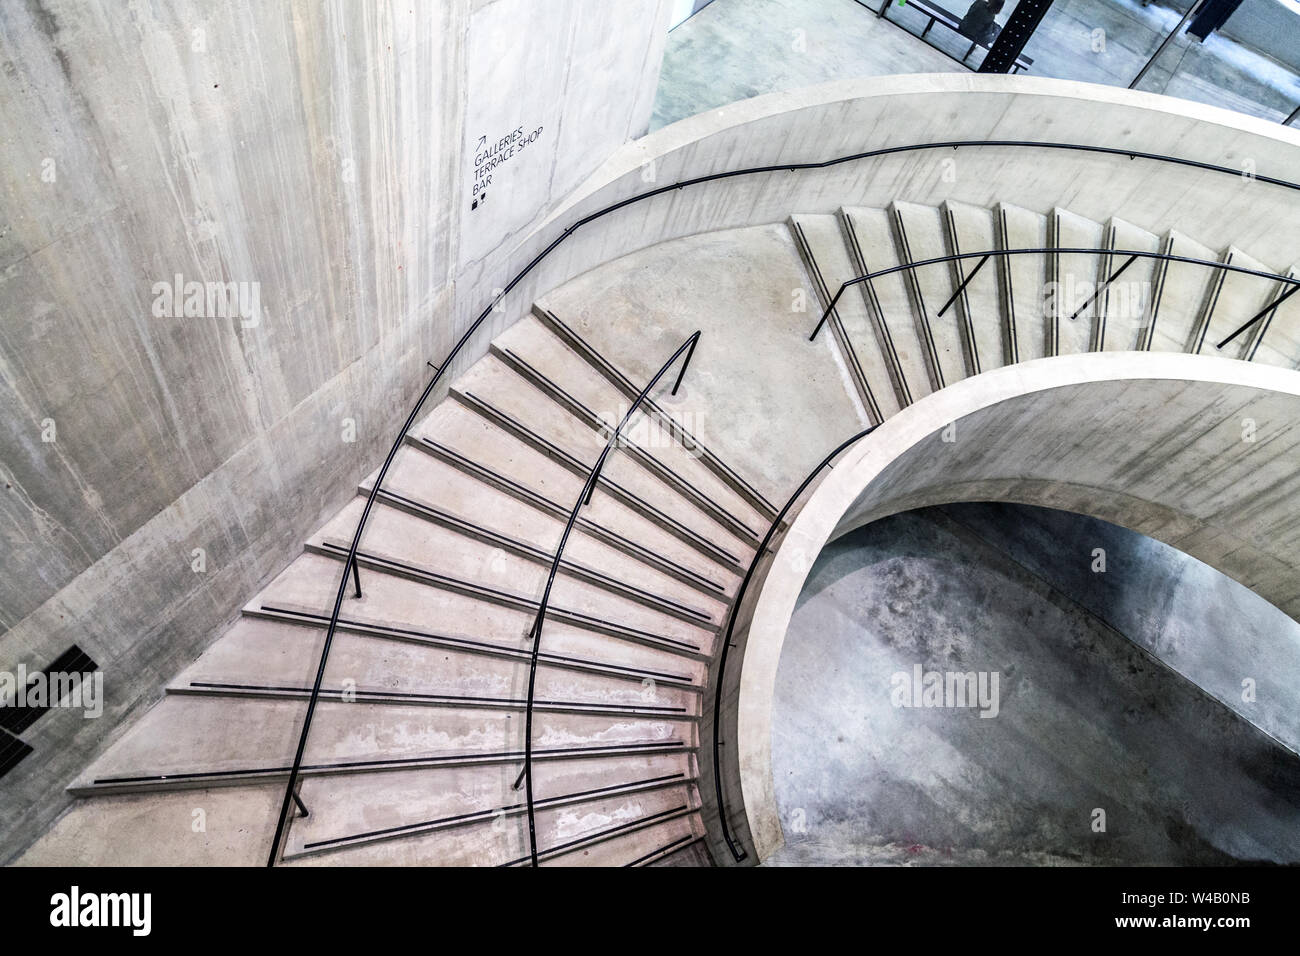 Escalier intérieur de la Tate Modern Blavatnik Building, Londres, UK Banque D'Images